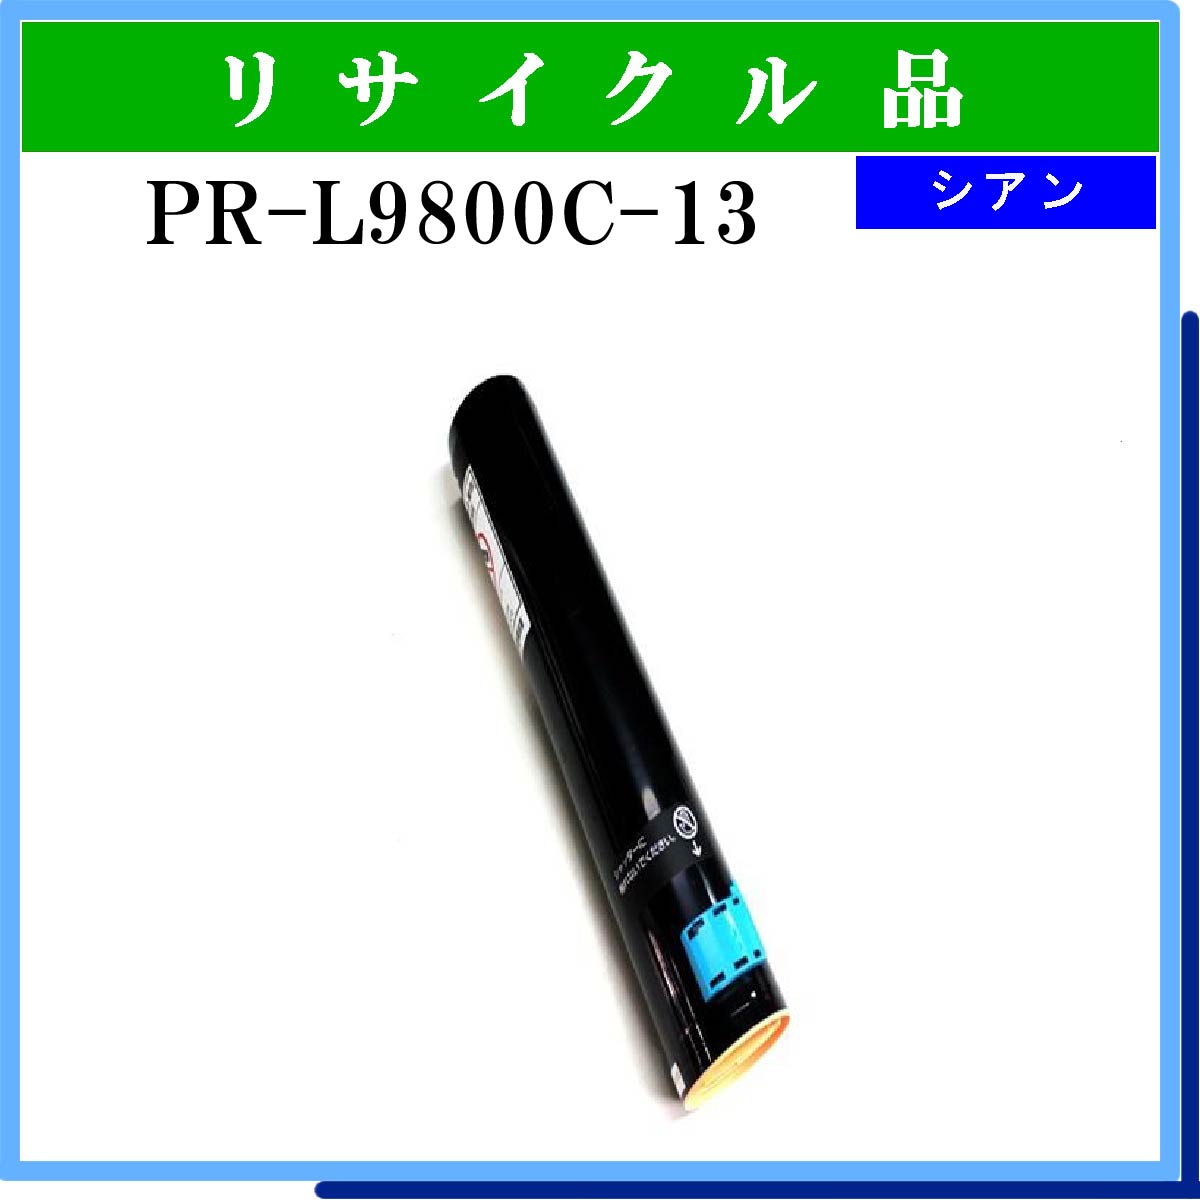 PR-L9800C-13